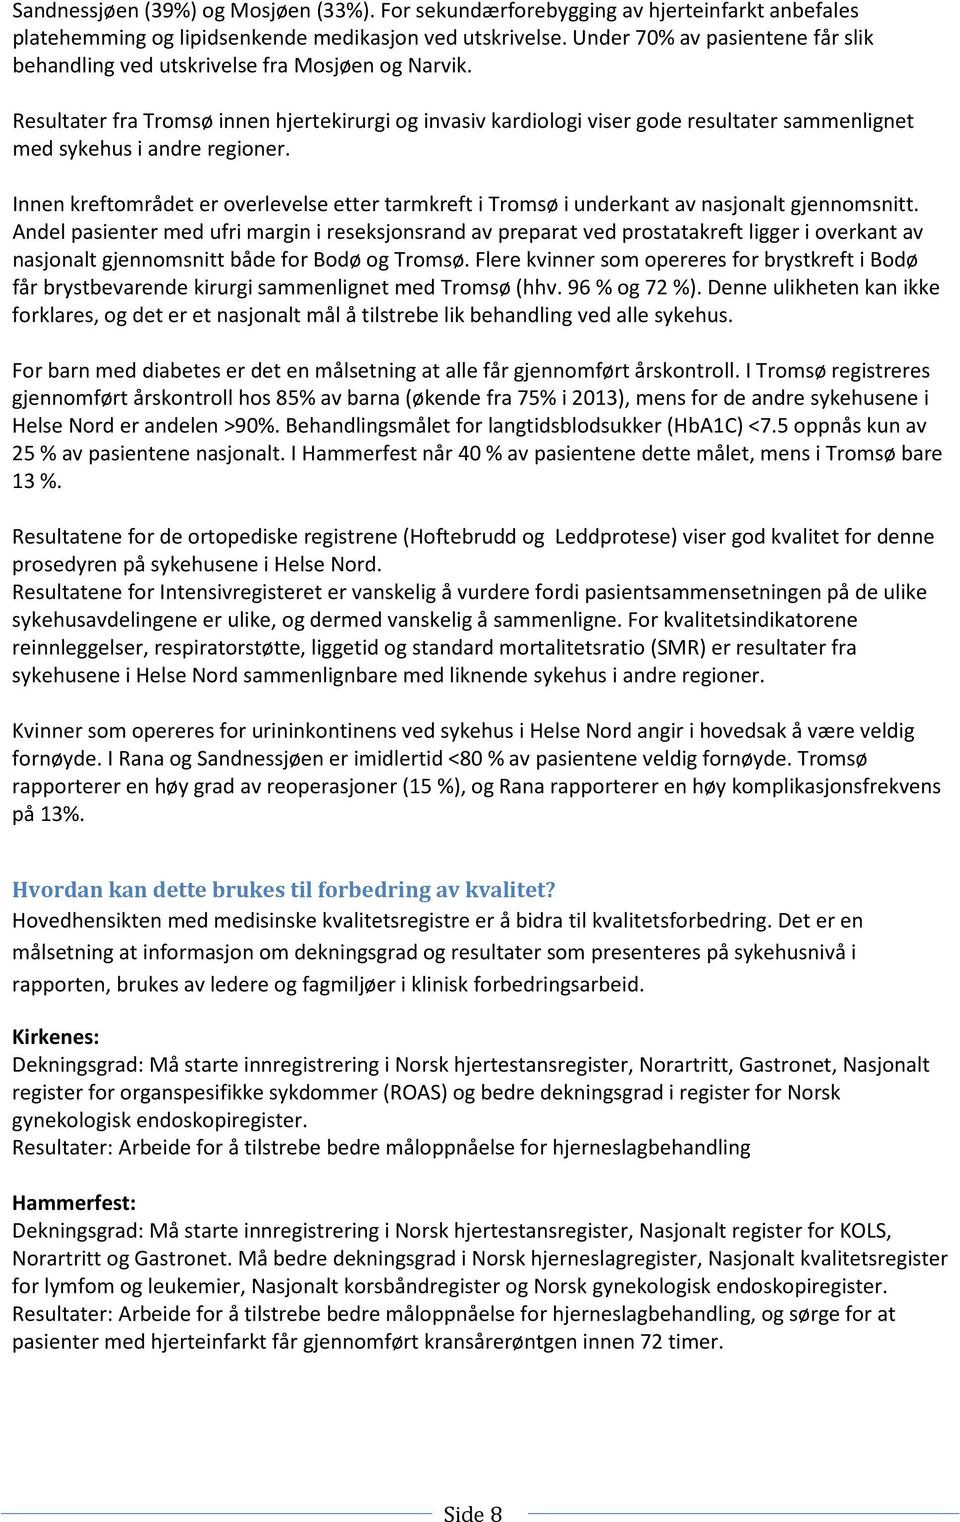 Resultater fra Tromsø innen hjertekirurgi og invasiv kardiologi viser gode resultater sammenlignet med sykehus i andre regioner.